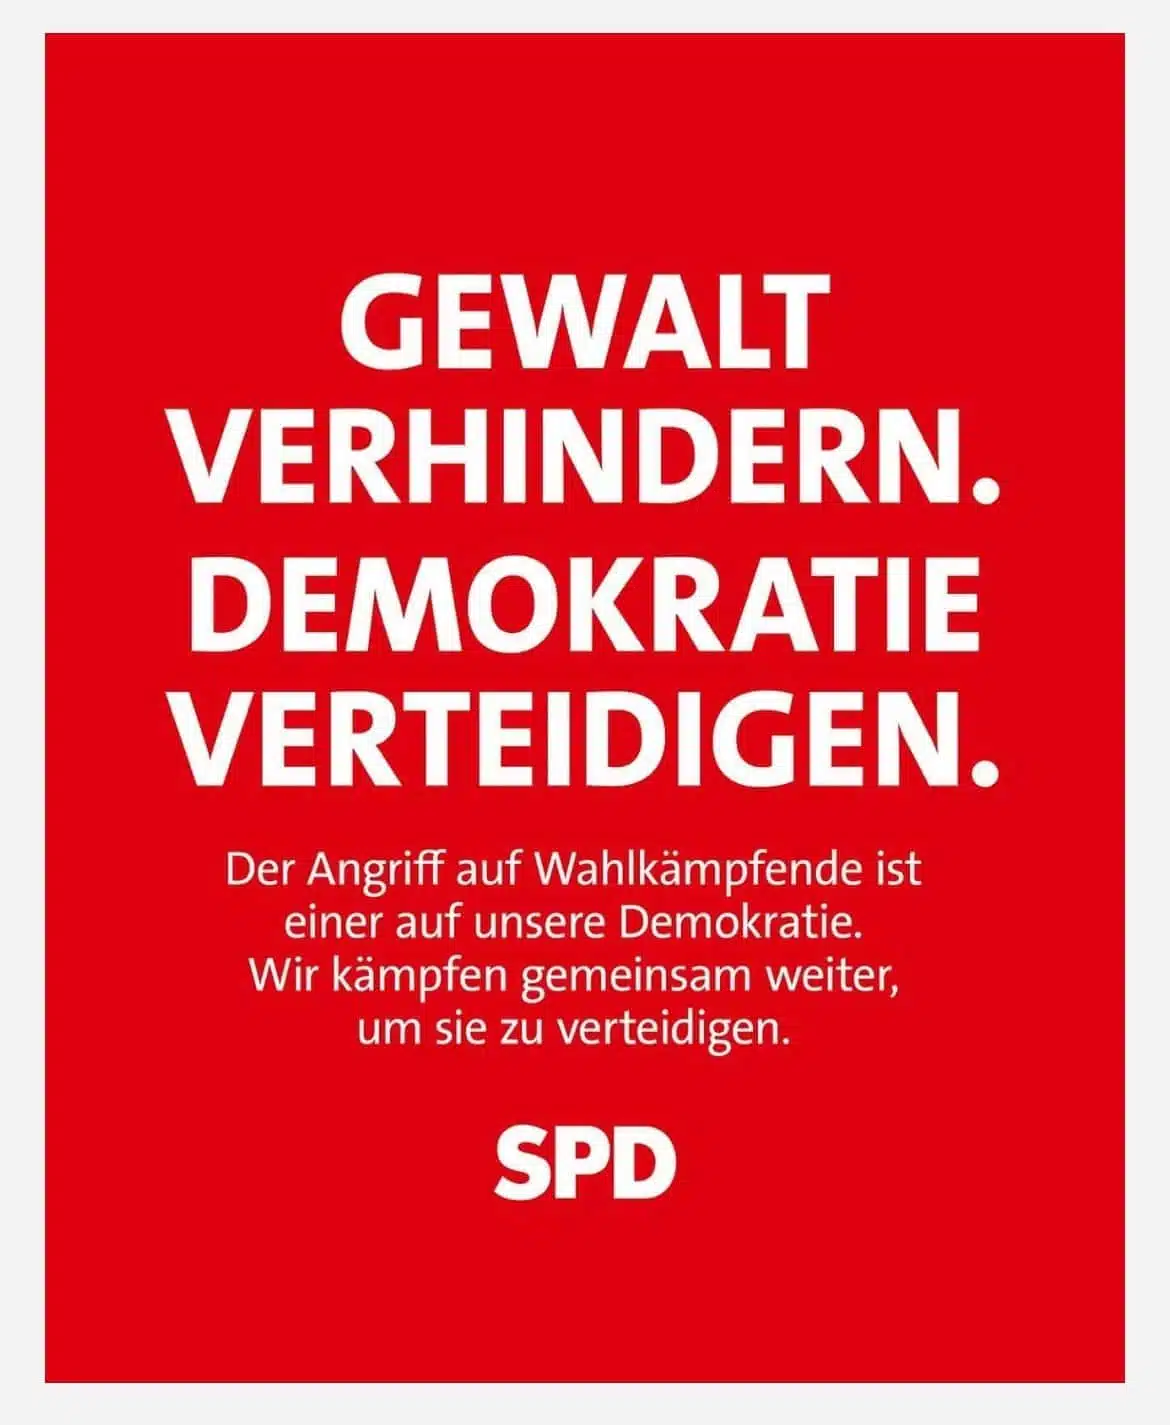 GEWALT VERHINDERN. DEMOKRATIE VERTEIDIGEN. Der Angriff auf Wahlkämpfende ist einer auf unsere Demokratie. Wir kämpfen gemeinsam weiter, um sie zu verteidigen. SPD